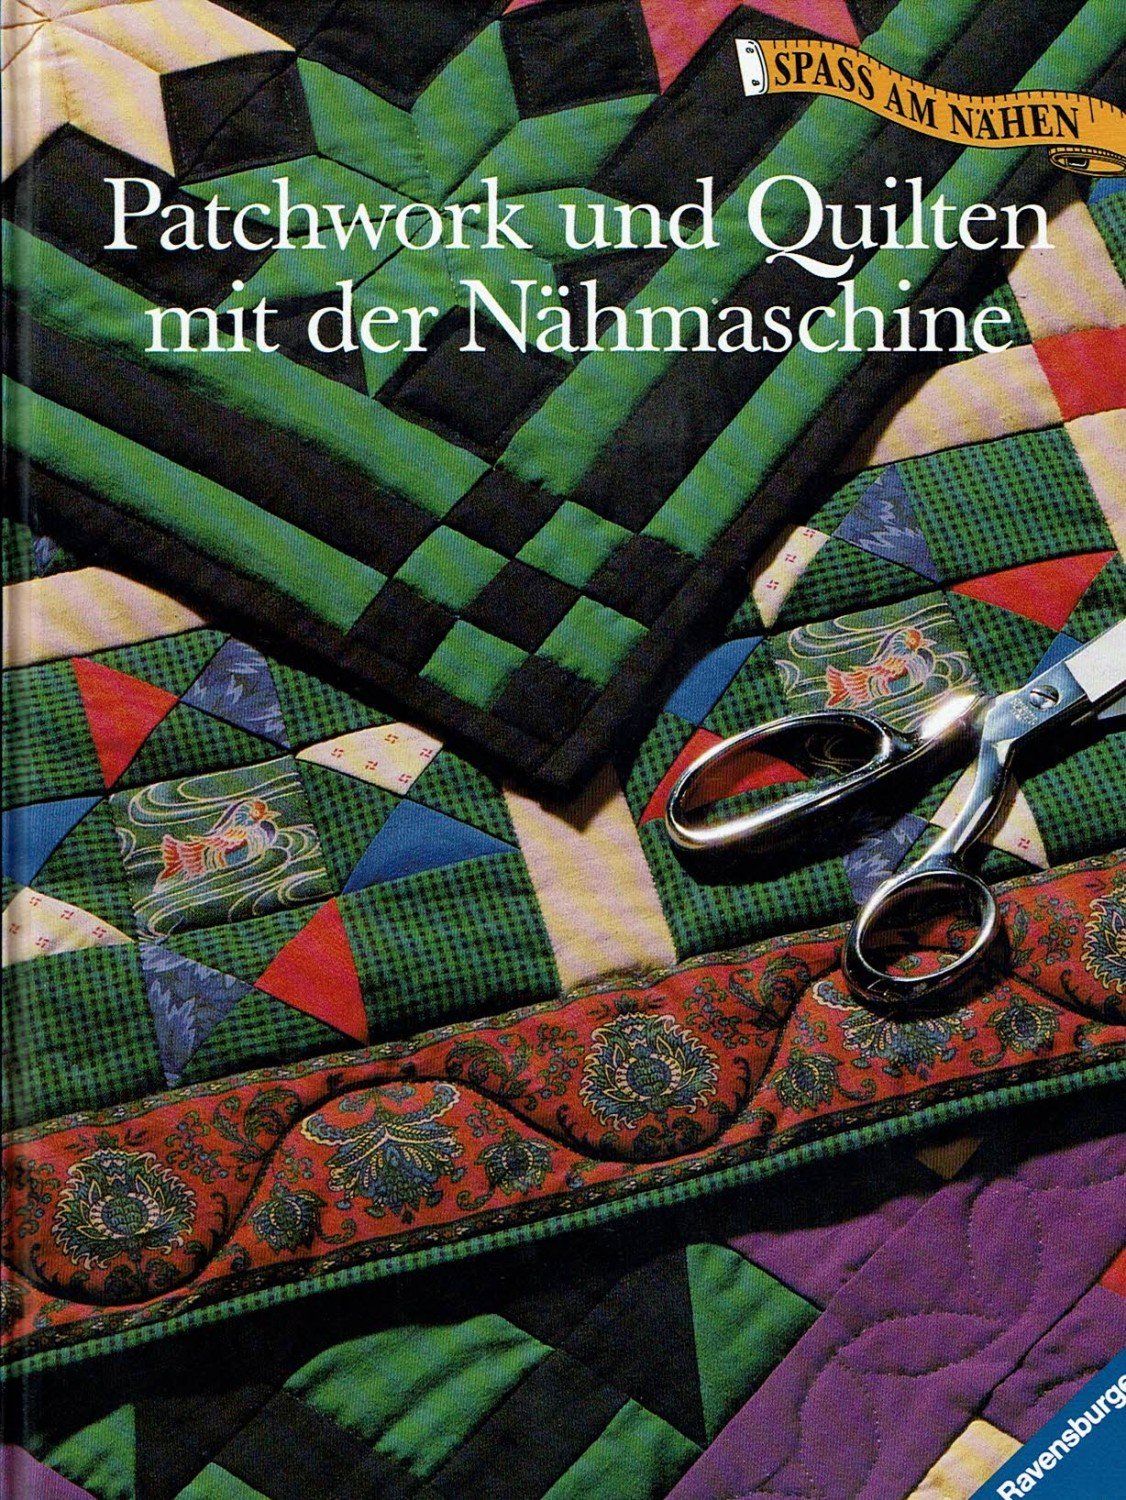 Patchwork Und Quilten Mit Der Nahmaschine Spass Am Nahen Buch Gebraucht Kaufen A02j6wcq01zzc